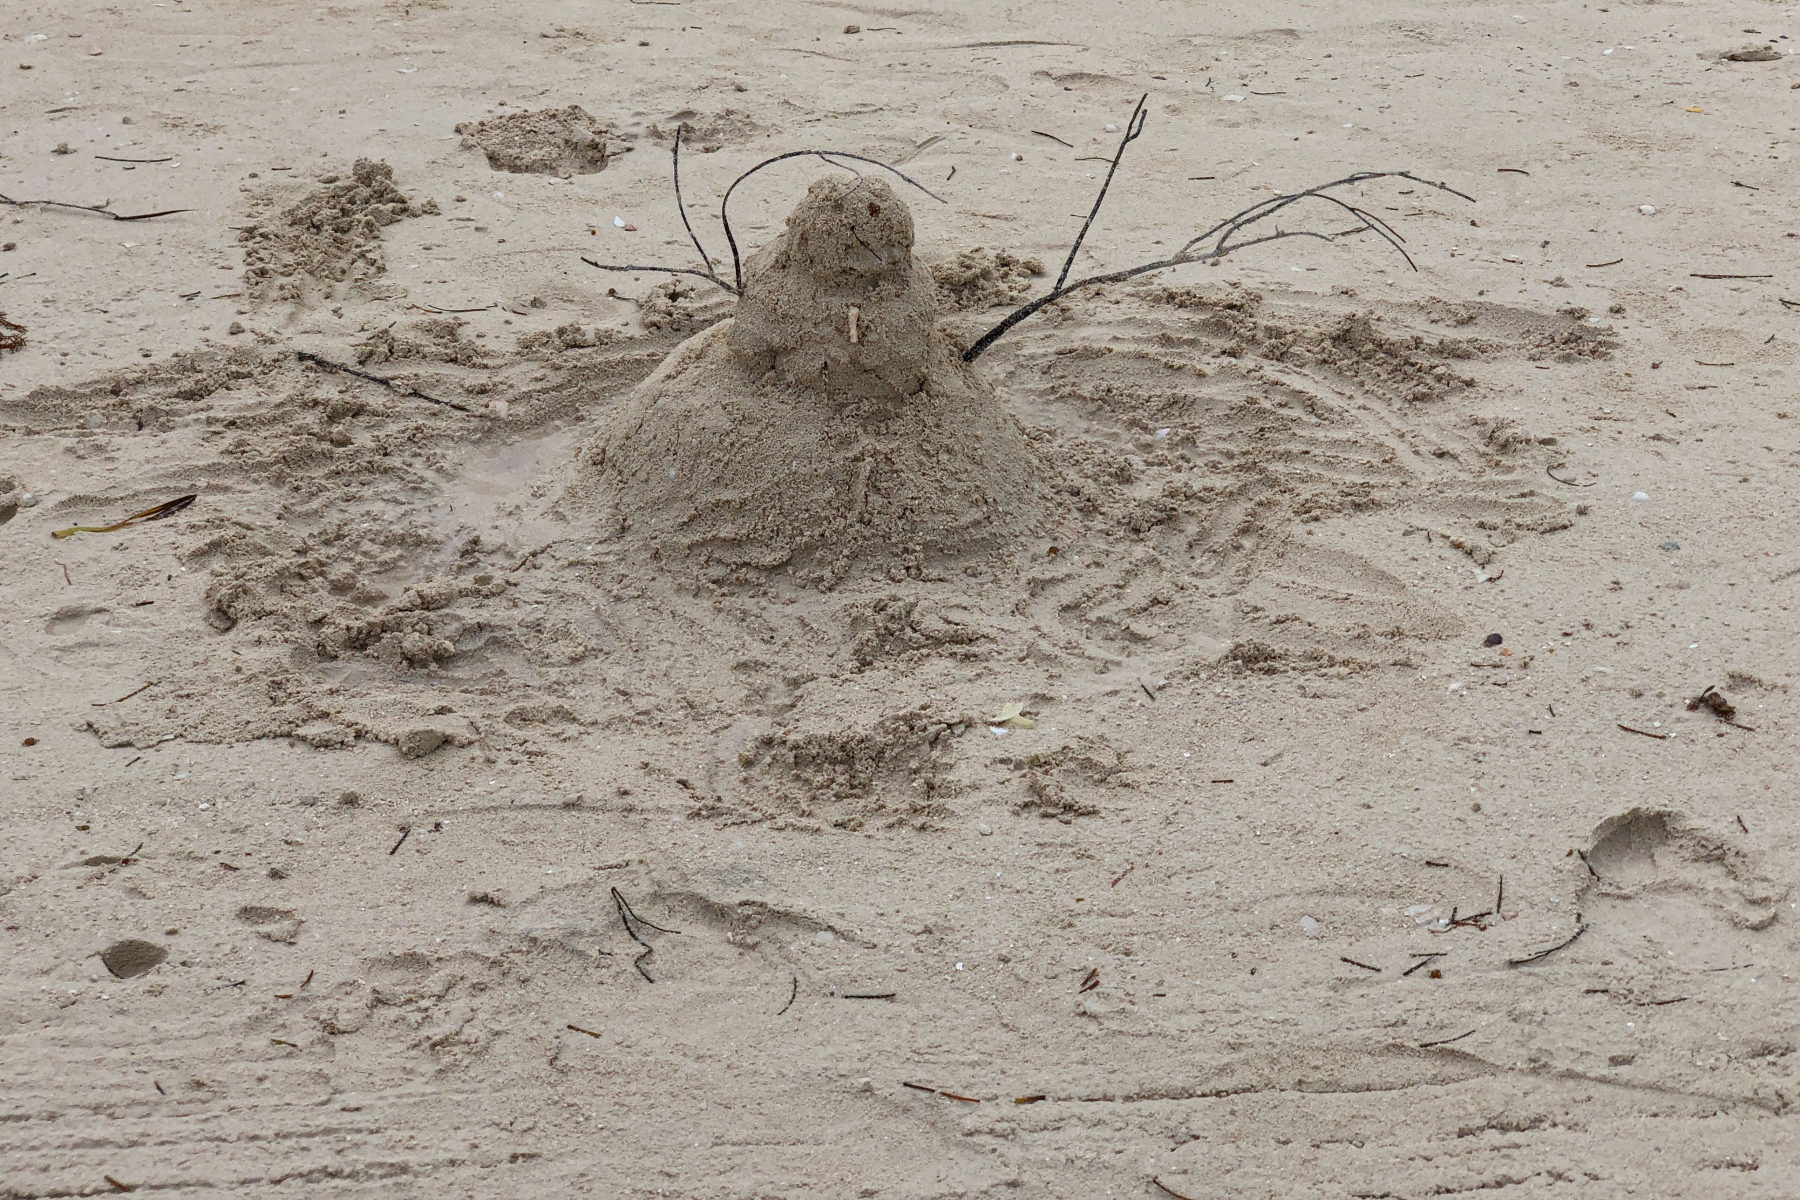 Snowman At CocoCay, Bahamas